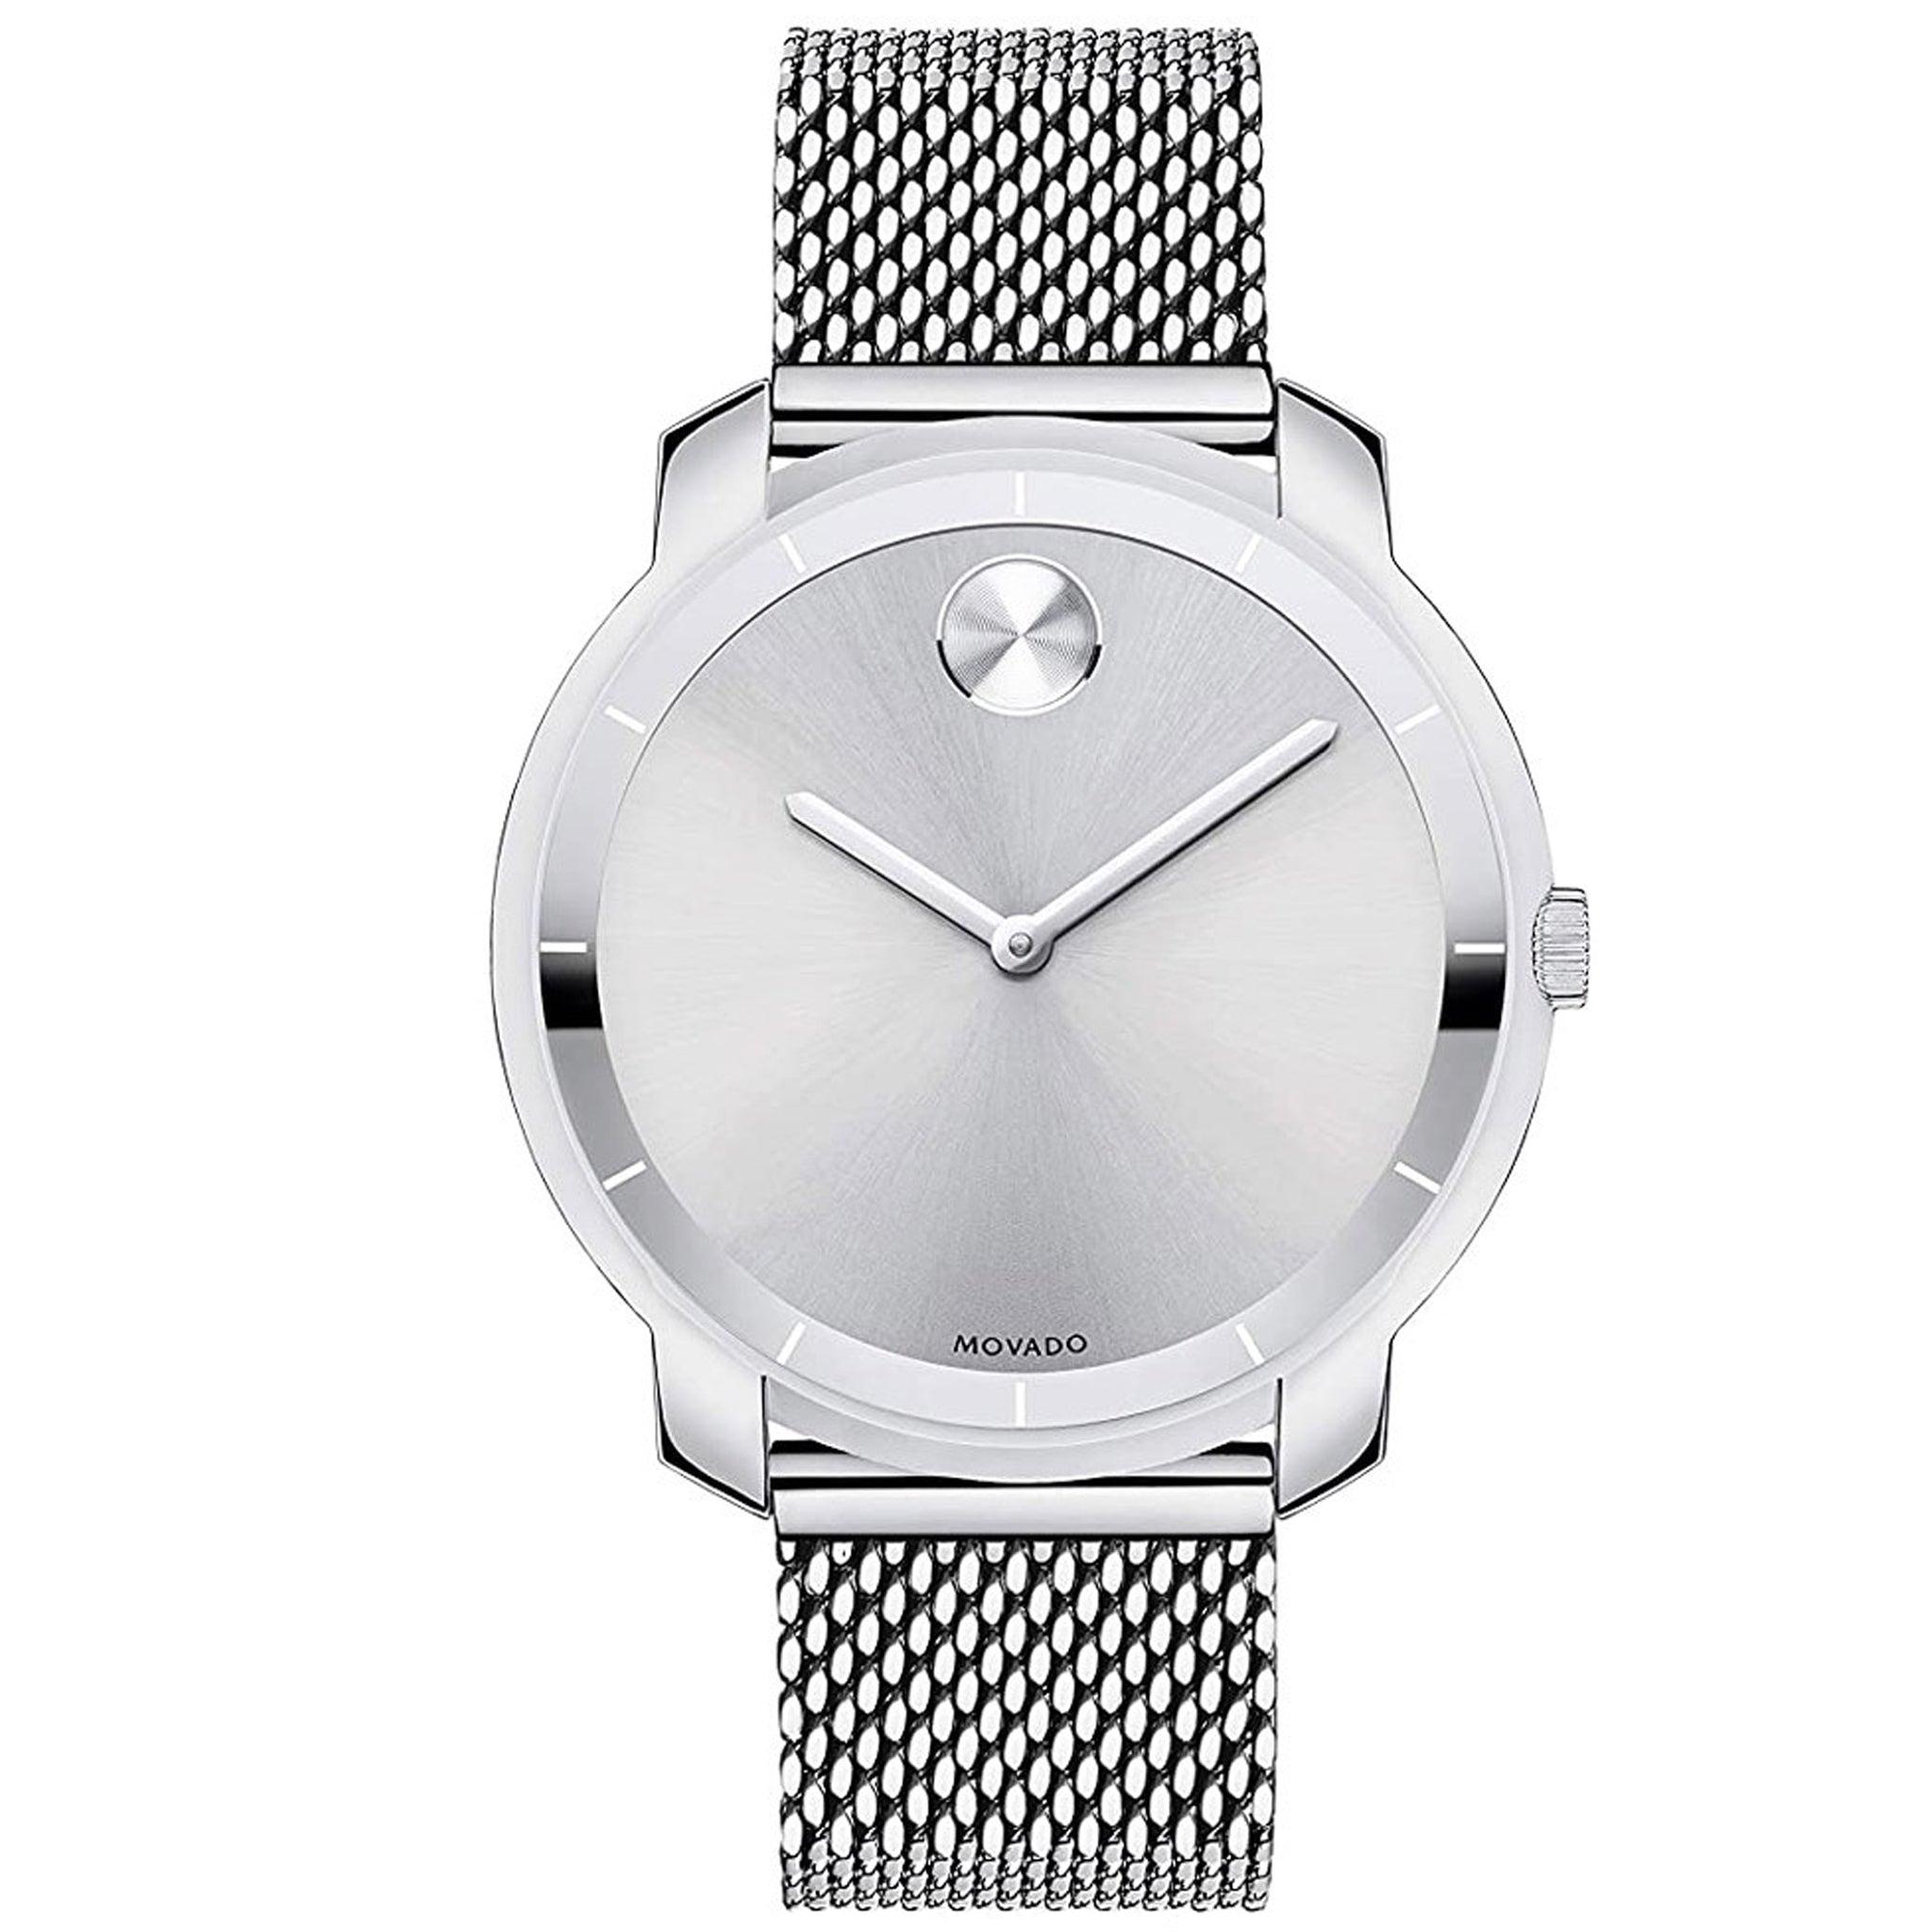 ساعة موفادو بولد سيريز فضية اللون من الفولاذ المقاوم للصدأ بمينا فضي كوارتز للسيدات Movado 3600241 Bold Series Silver Stainless Steel Mesh Silver Dial Quartz Watch For Ladies